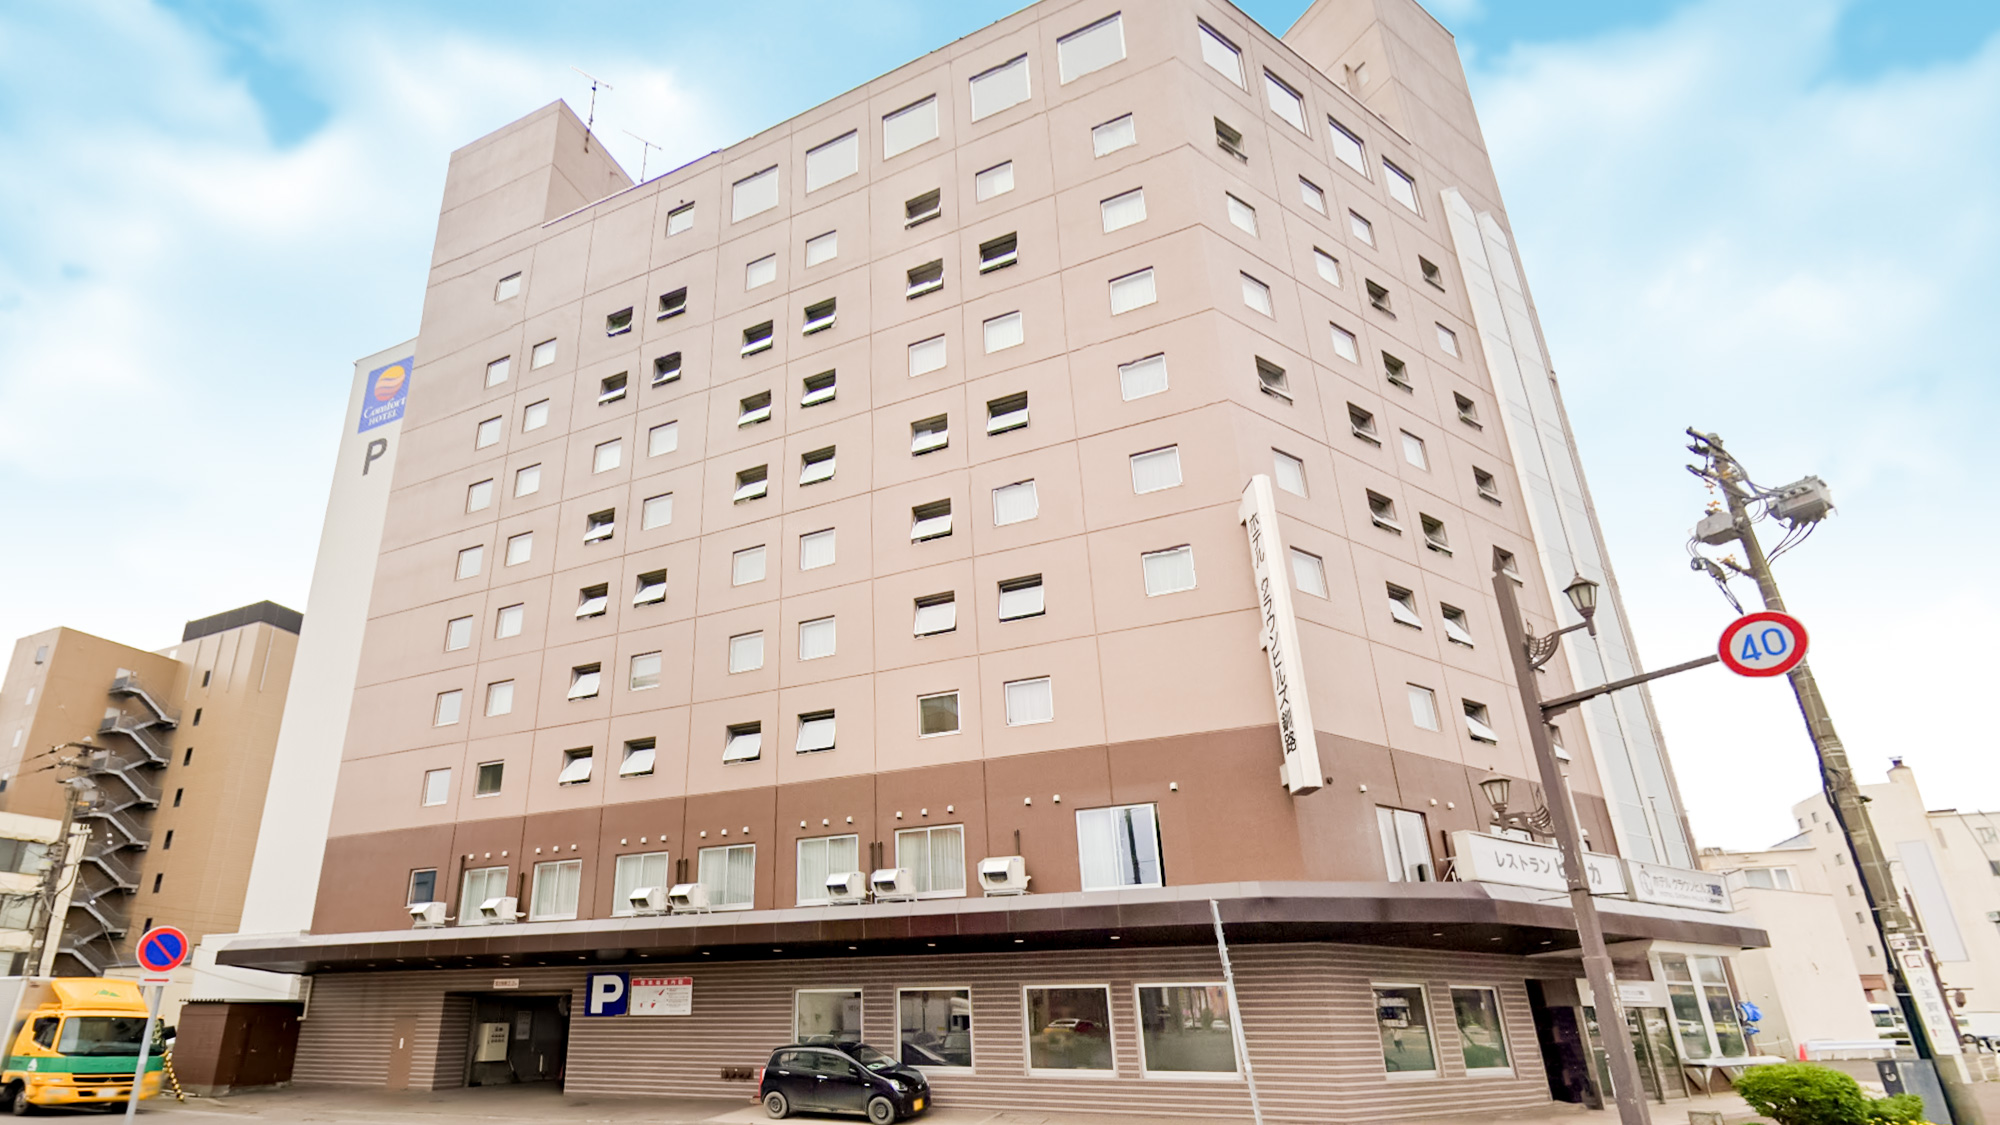 一人で釧路。釧路観光に便利なシングルルームが安いホテル